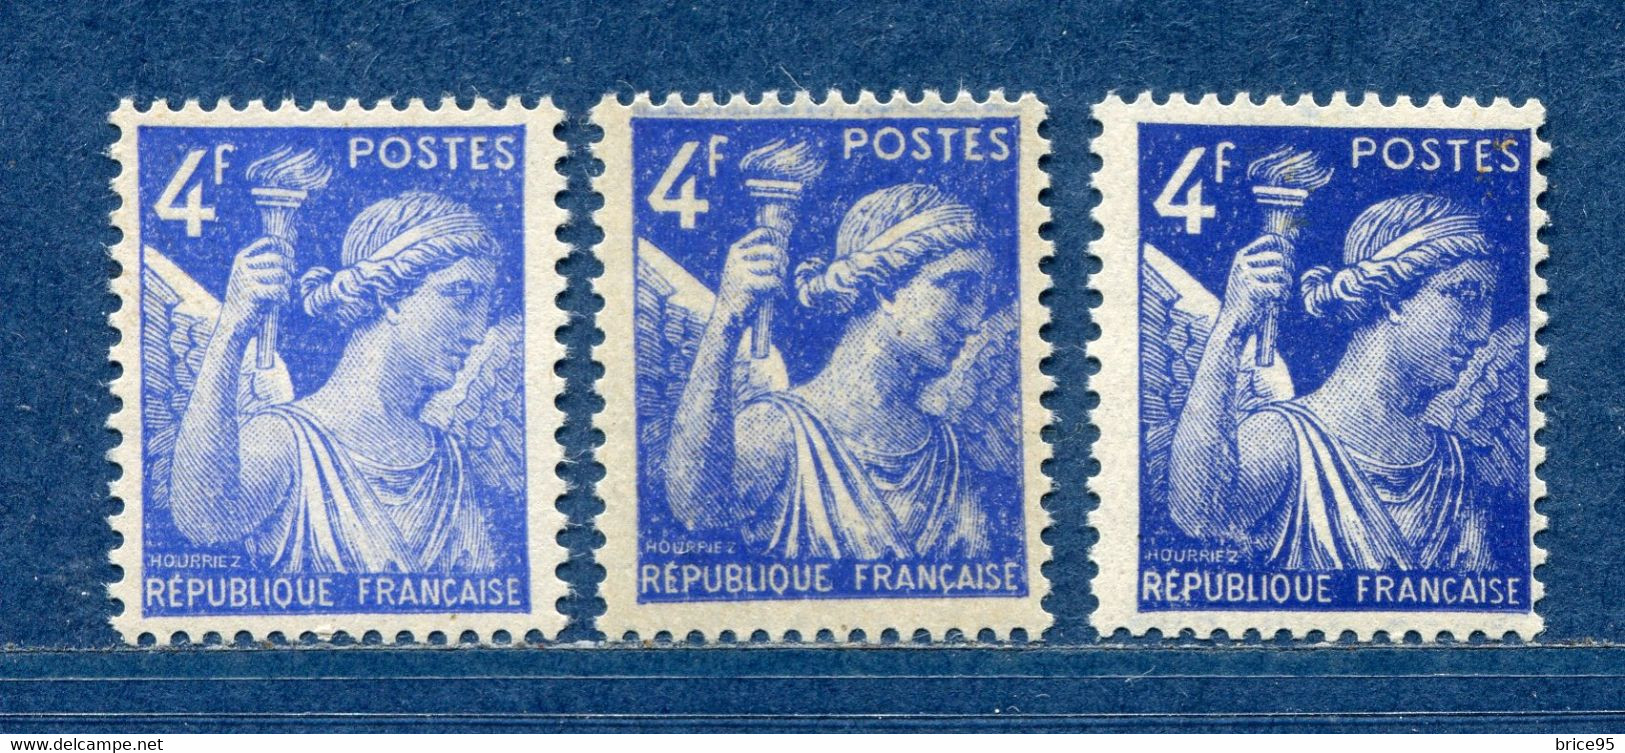 ⭐ France - Variété - YT N° 656 - Couleurs - Pétouilles - Neuf Sans Charnière - 1944 ⭐ - Ungebraucht